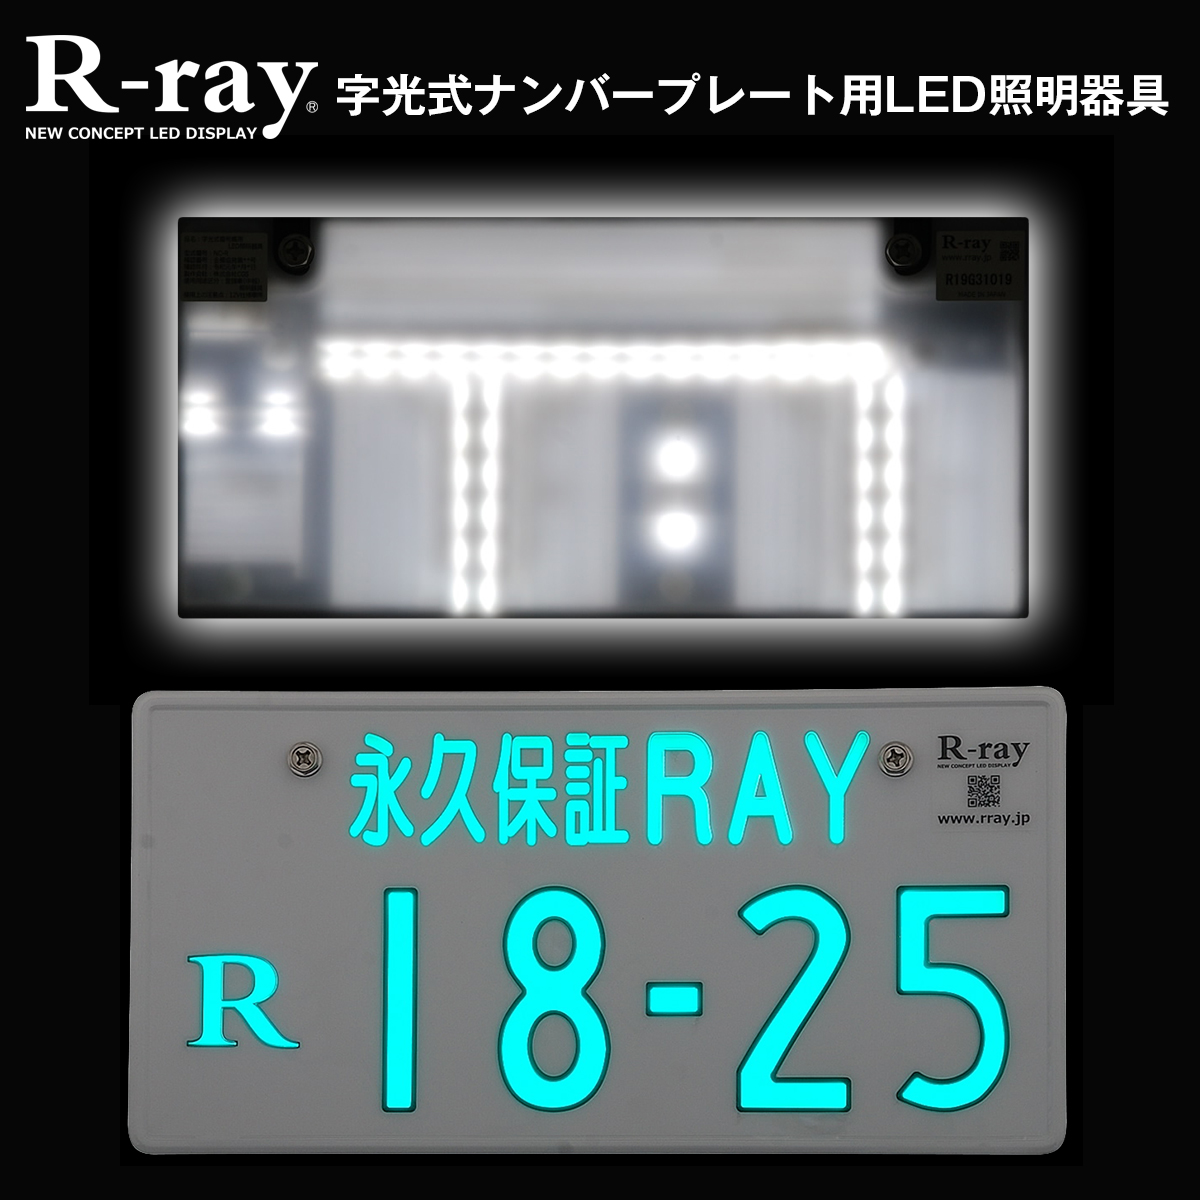 品質一番の 字光式 2枚セット アールレイ R-ray 日本製 LED ナンバープレート - その他 - www.smithsfalls.ca